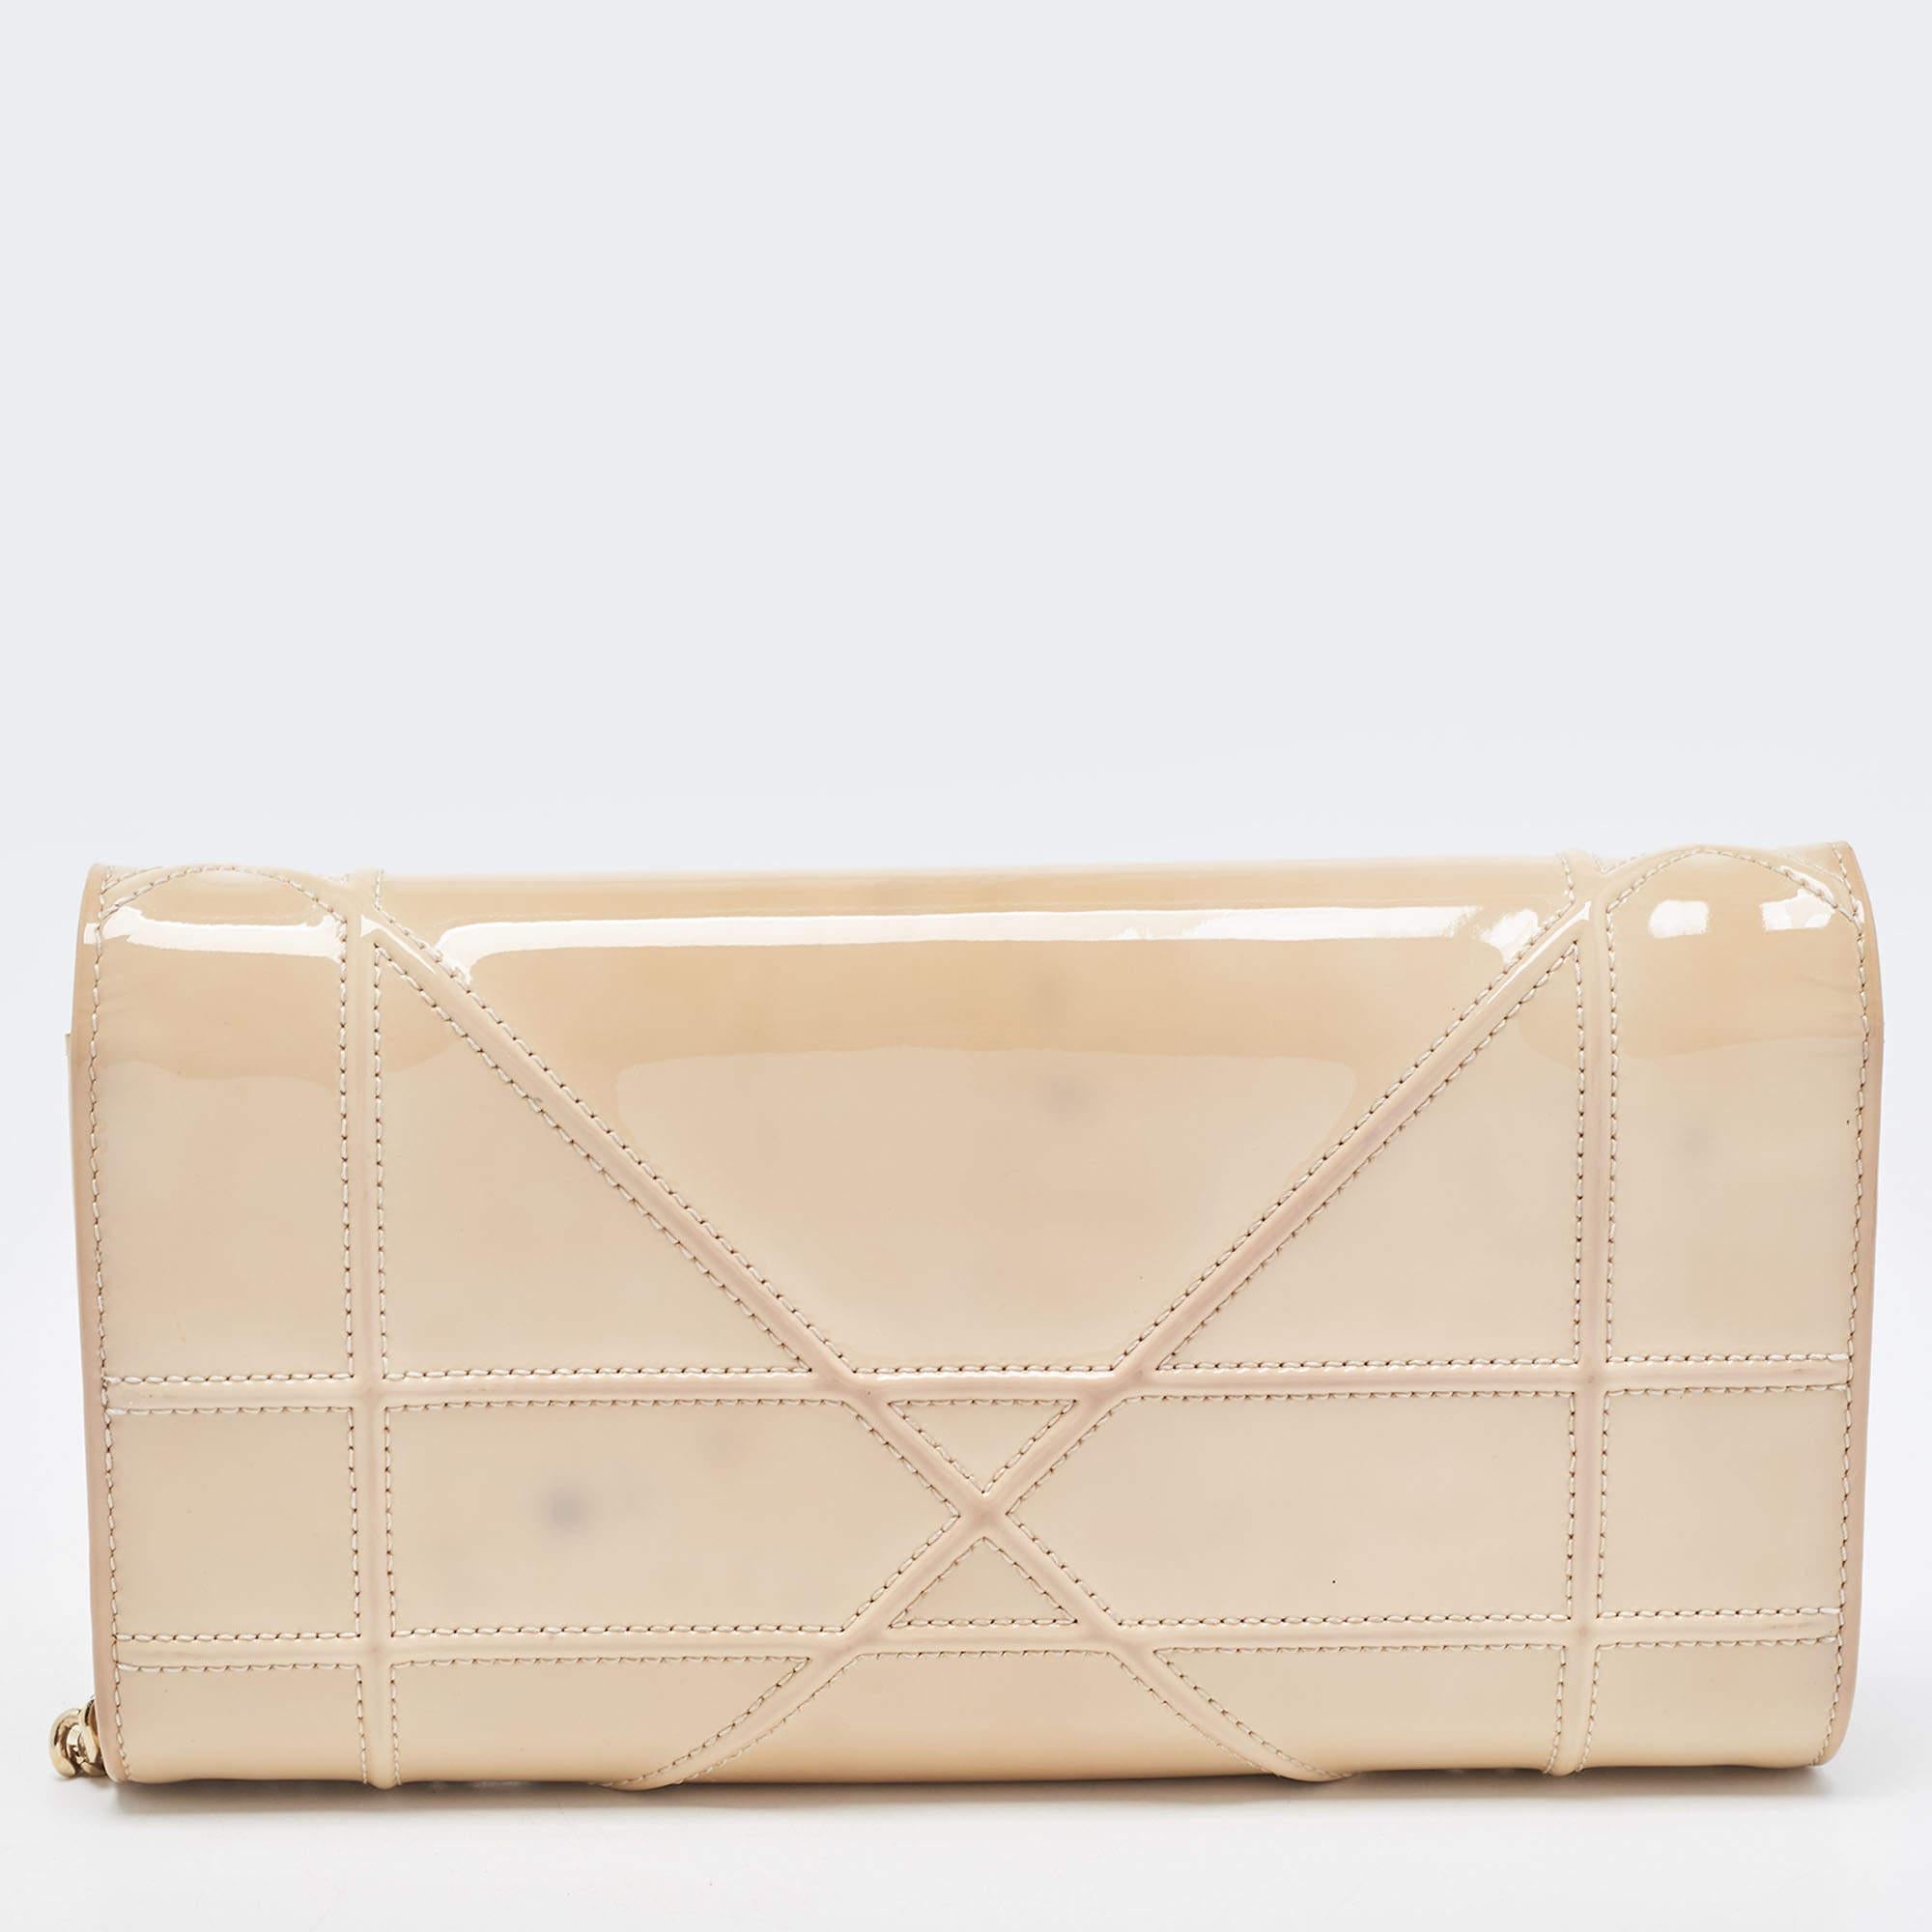 Dior bietet Ihnen mit dieser gut verarbeiteten Tasche ein wunderbares Accessoire, das Sie jeden Tag begleitet. Sie hat einen unverwechselbaren Look und eine praktische Größe.

Enthält: Original-Staubbeutel, Original-Box, Markenanhänger, abnehmbare